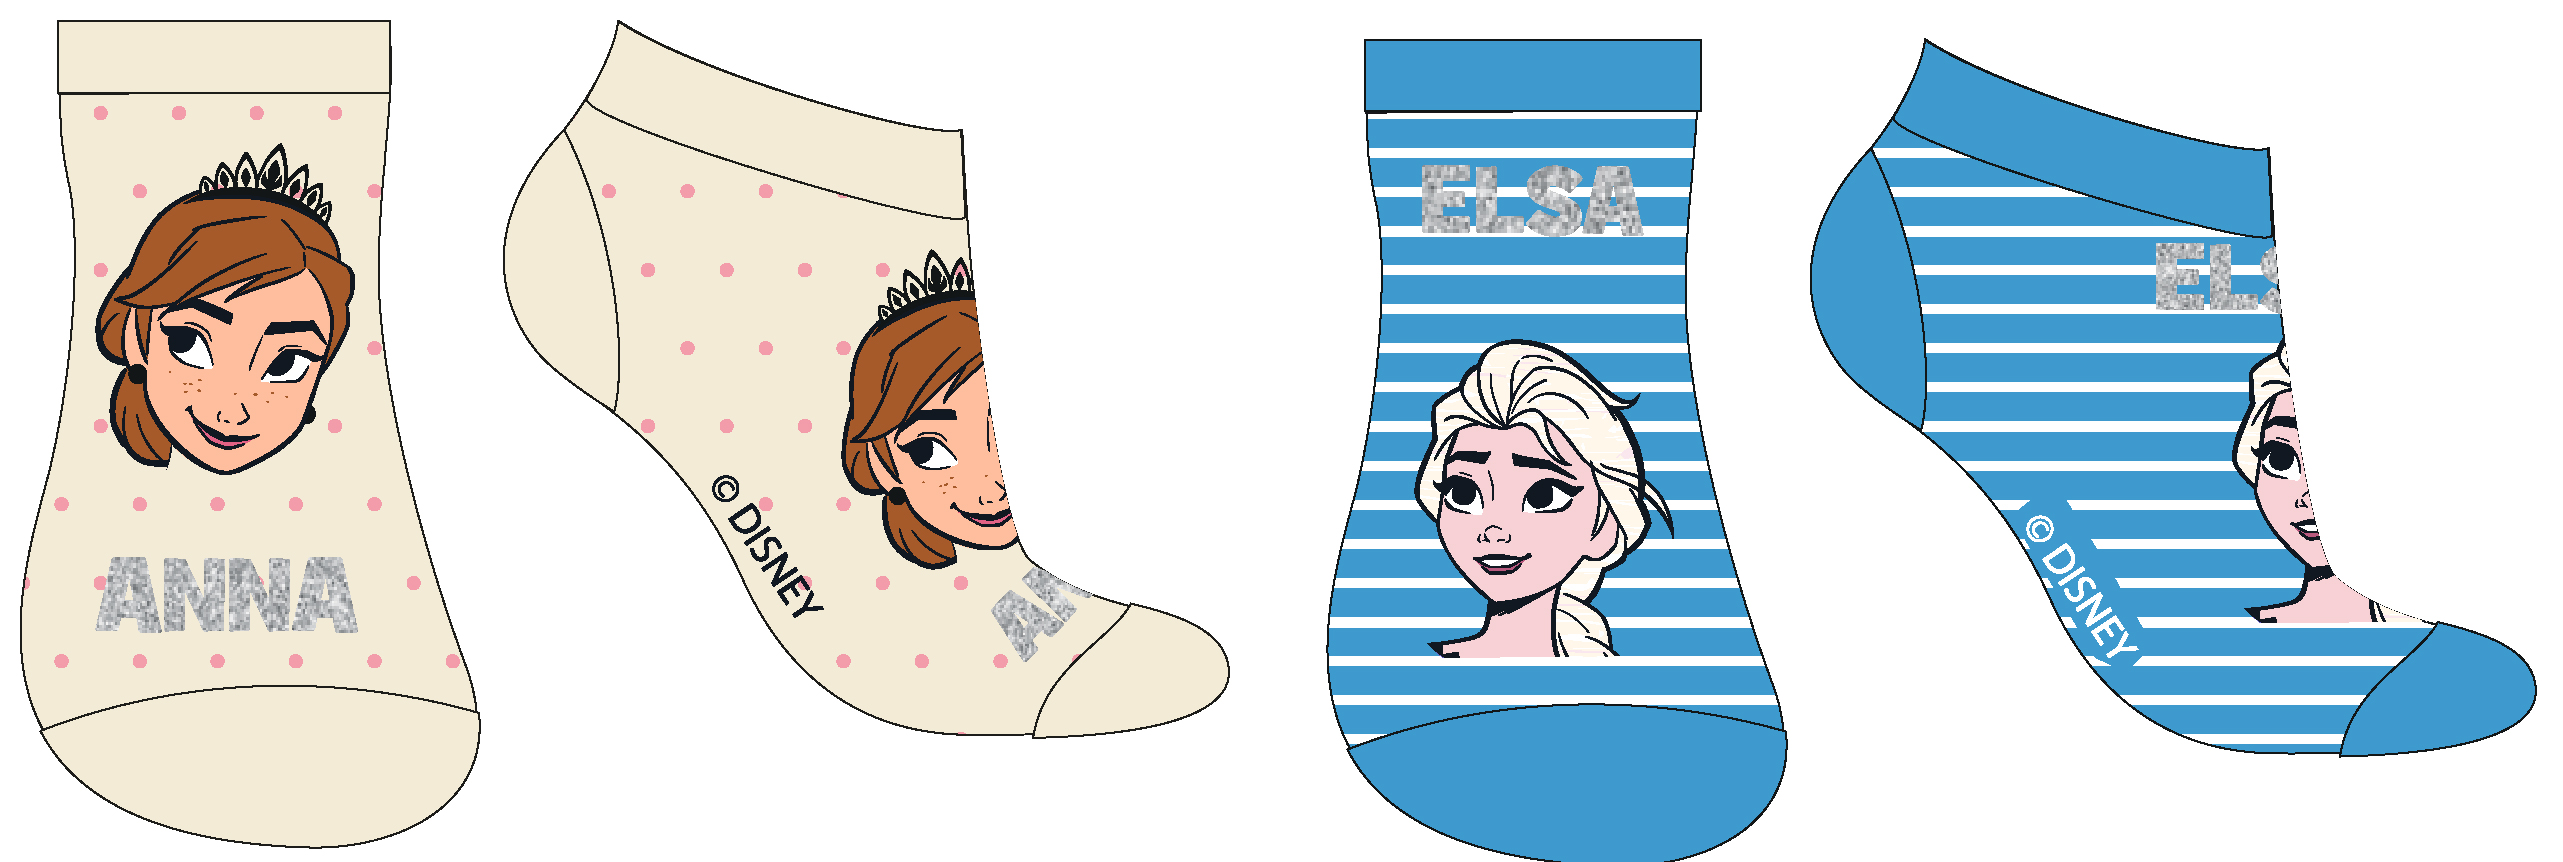 Frozen - licence Dívčí kotníkové ponožky - Frozen 52349427, smetanová / tyrkysová Barva: Mix barev, Velikost: 23-26